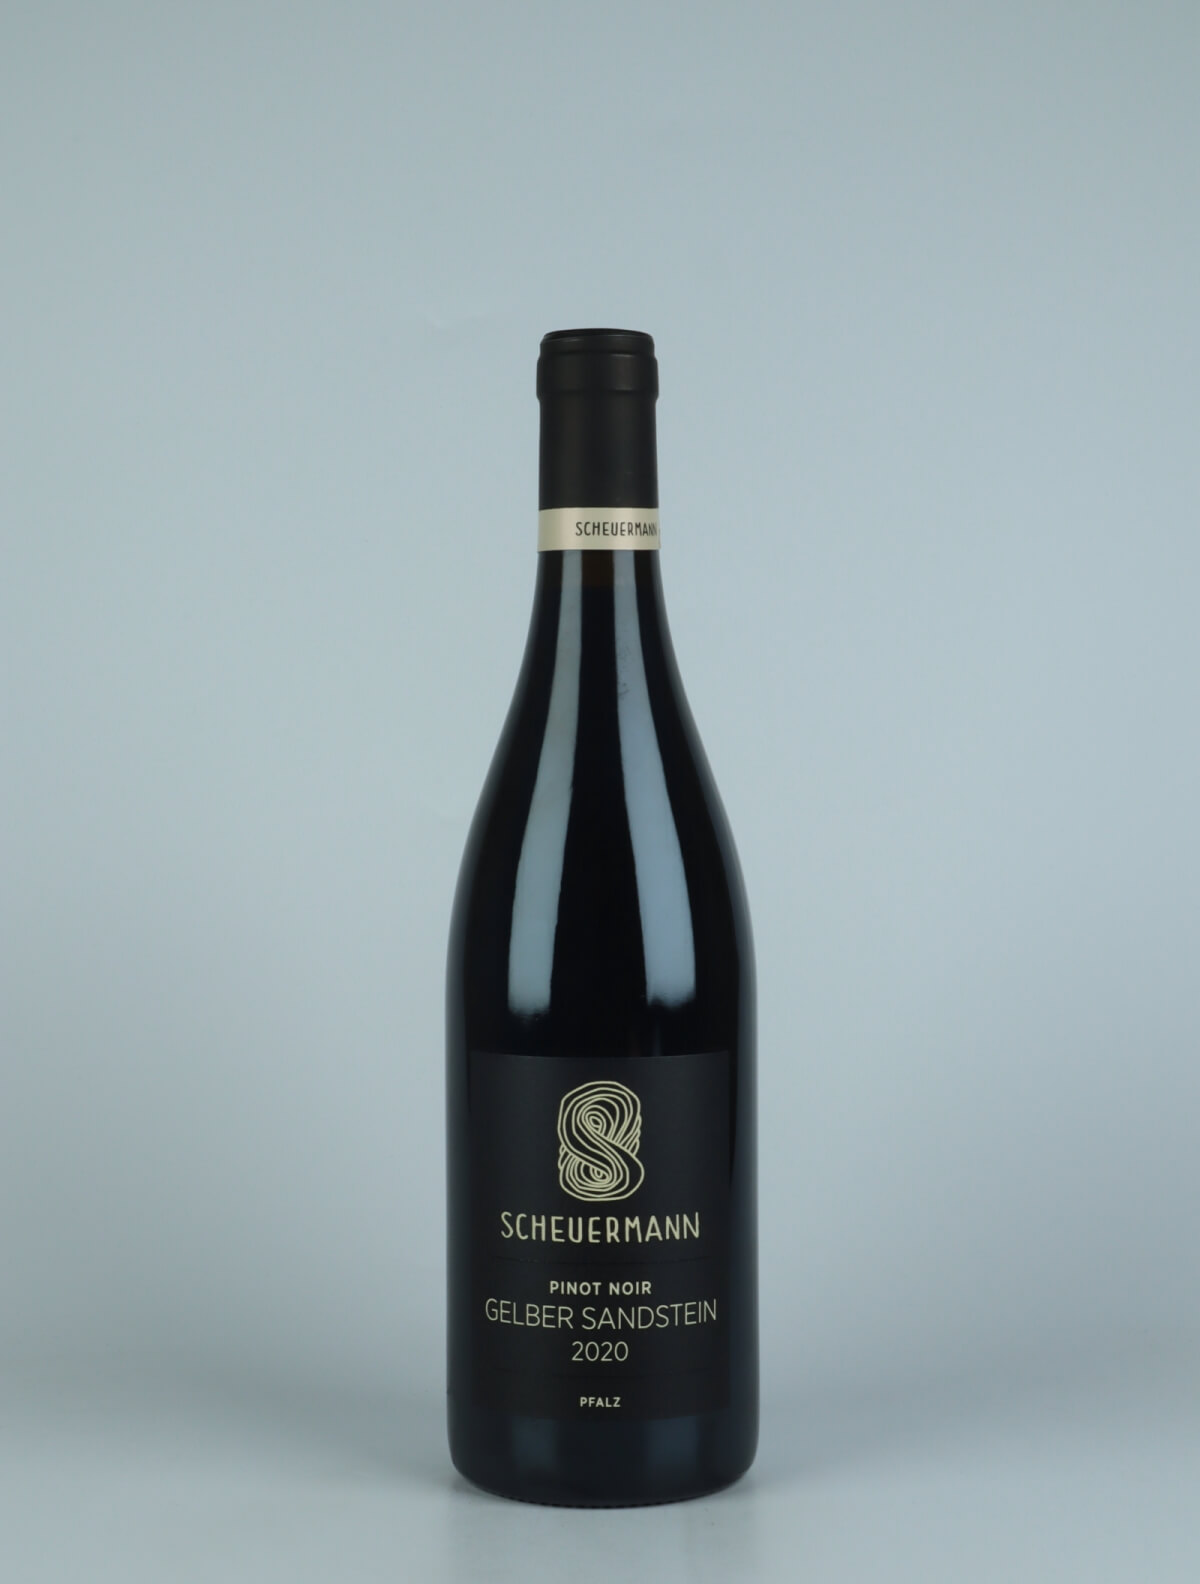 En flaske 2020 Pinot Noir - Gelber Sandstein Rødvin fra Weingut Scheuermann, Pfalz i Tyskland